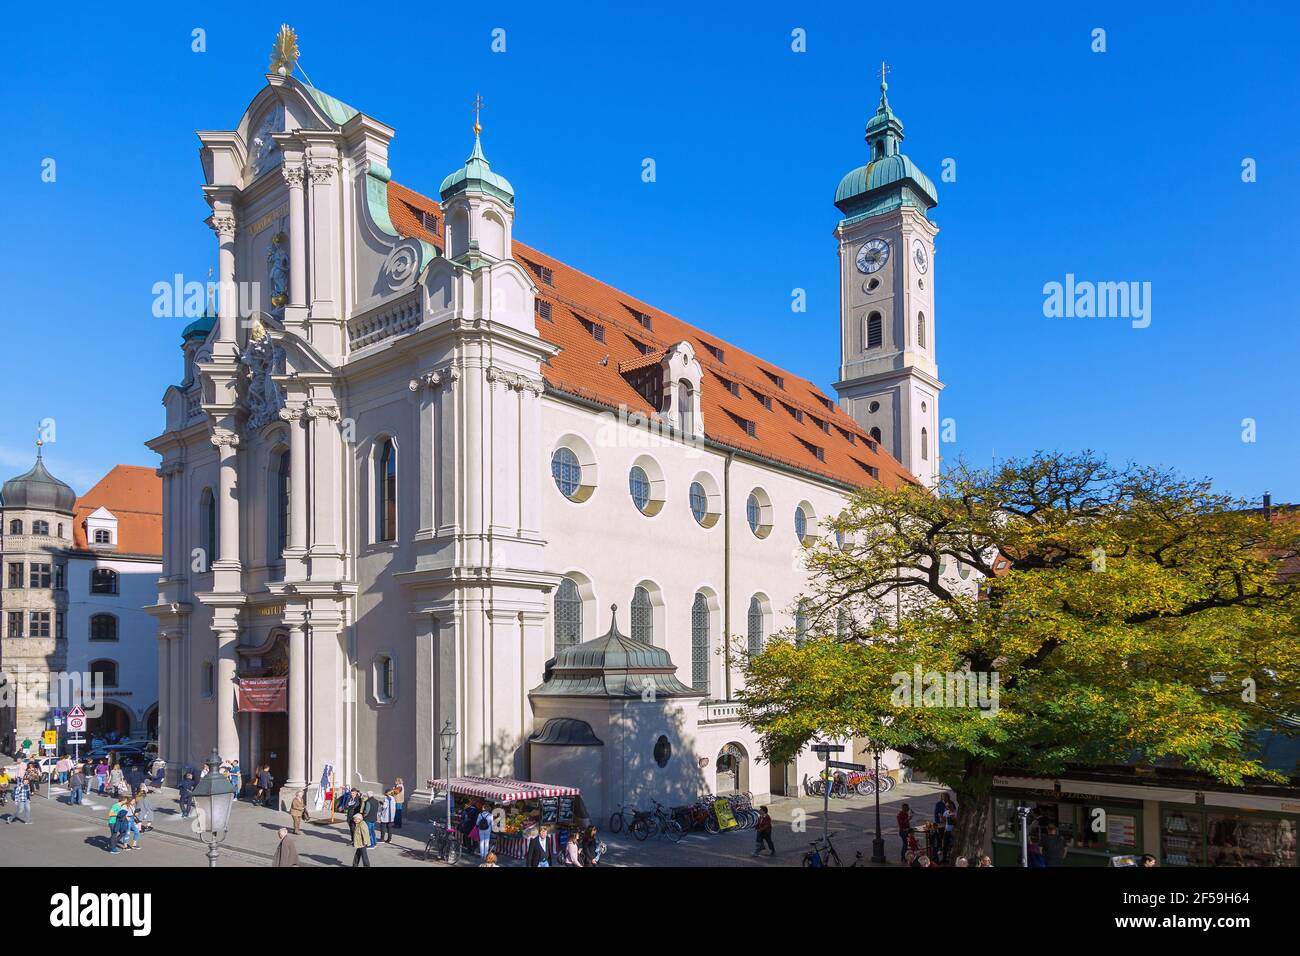 Geographie / Reisen, Deutschland, München, Altstadt, Kirche des Heiligen Geistes, Additional-Rights-Clearance-Info-not-available Stockfoto